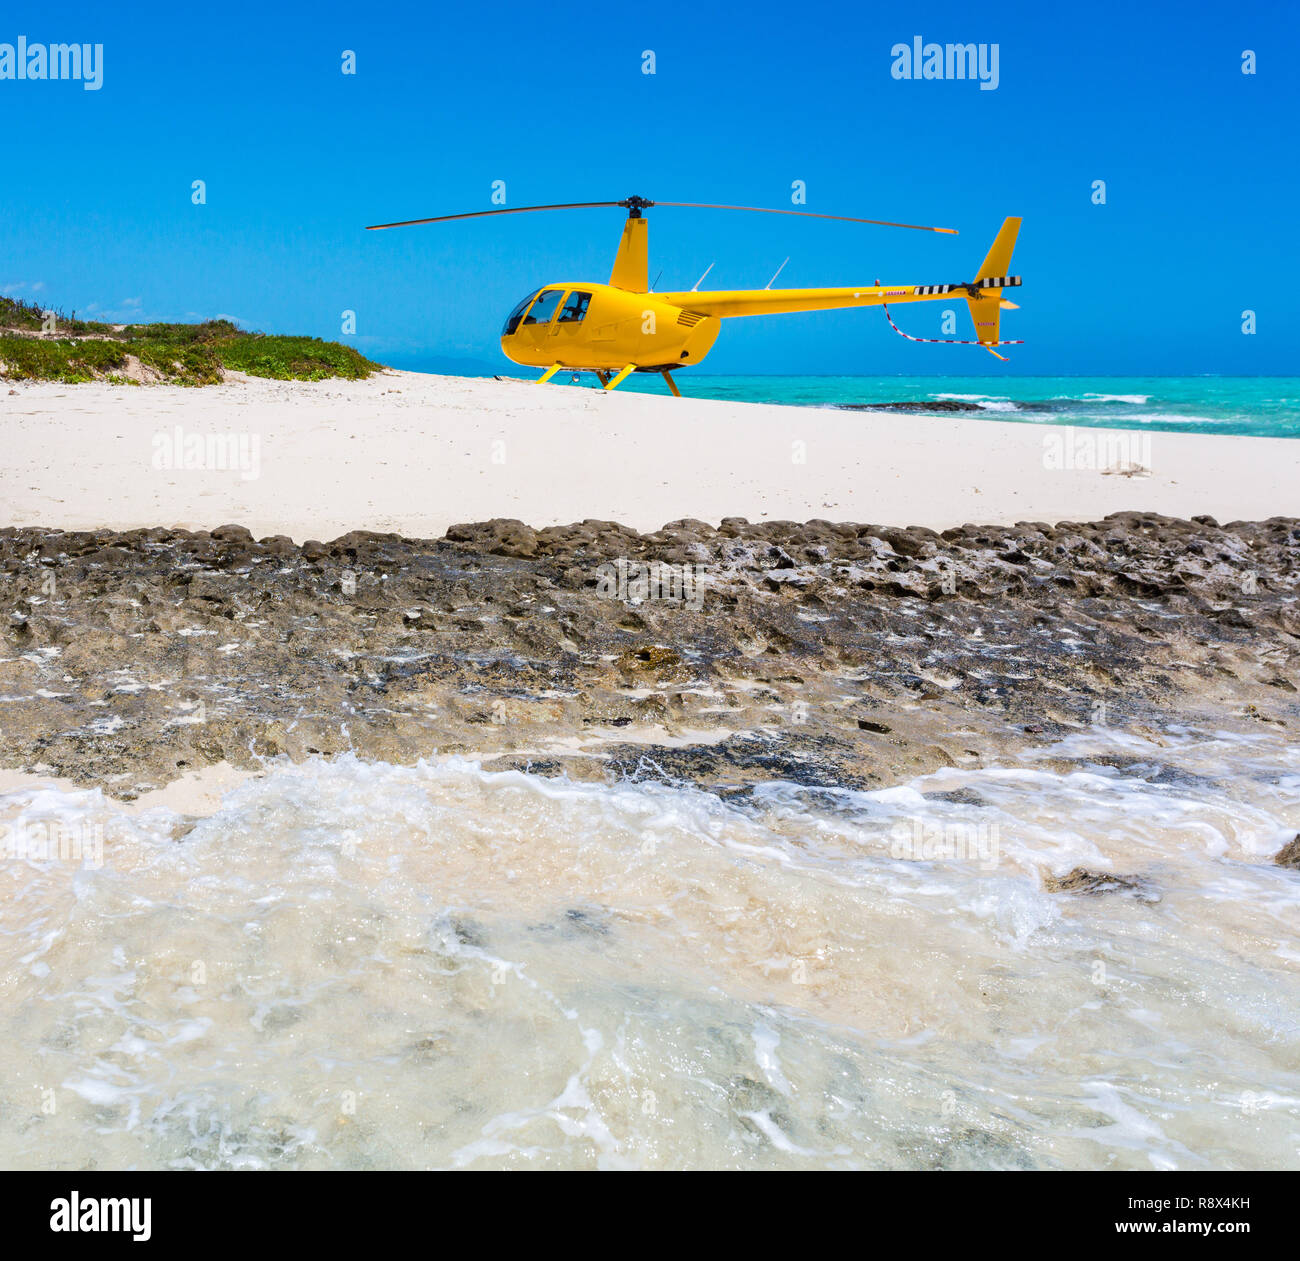 Einen gelben Hubschrauber landete auf einer idyllischen leeren Sandstrand von einer entfernten Insel, eine Azure türkisblaue Lagune im Hintergrund, Neukaledonien, Melanesien. Stockfoto